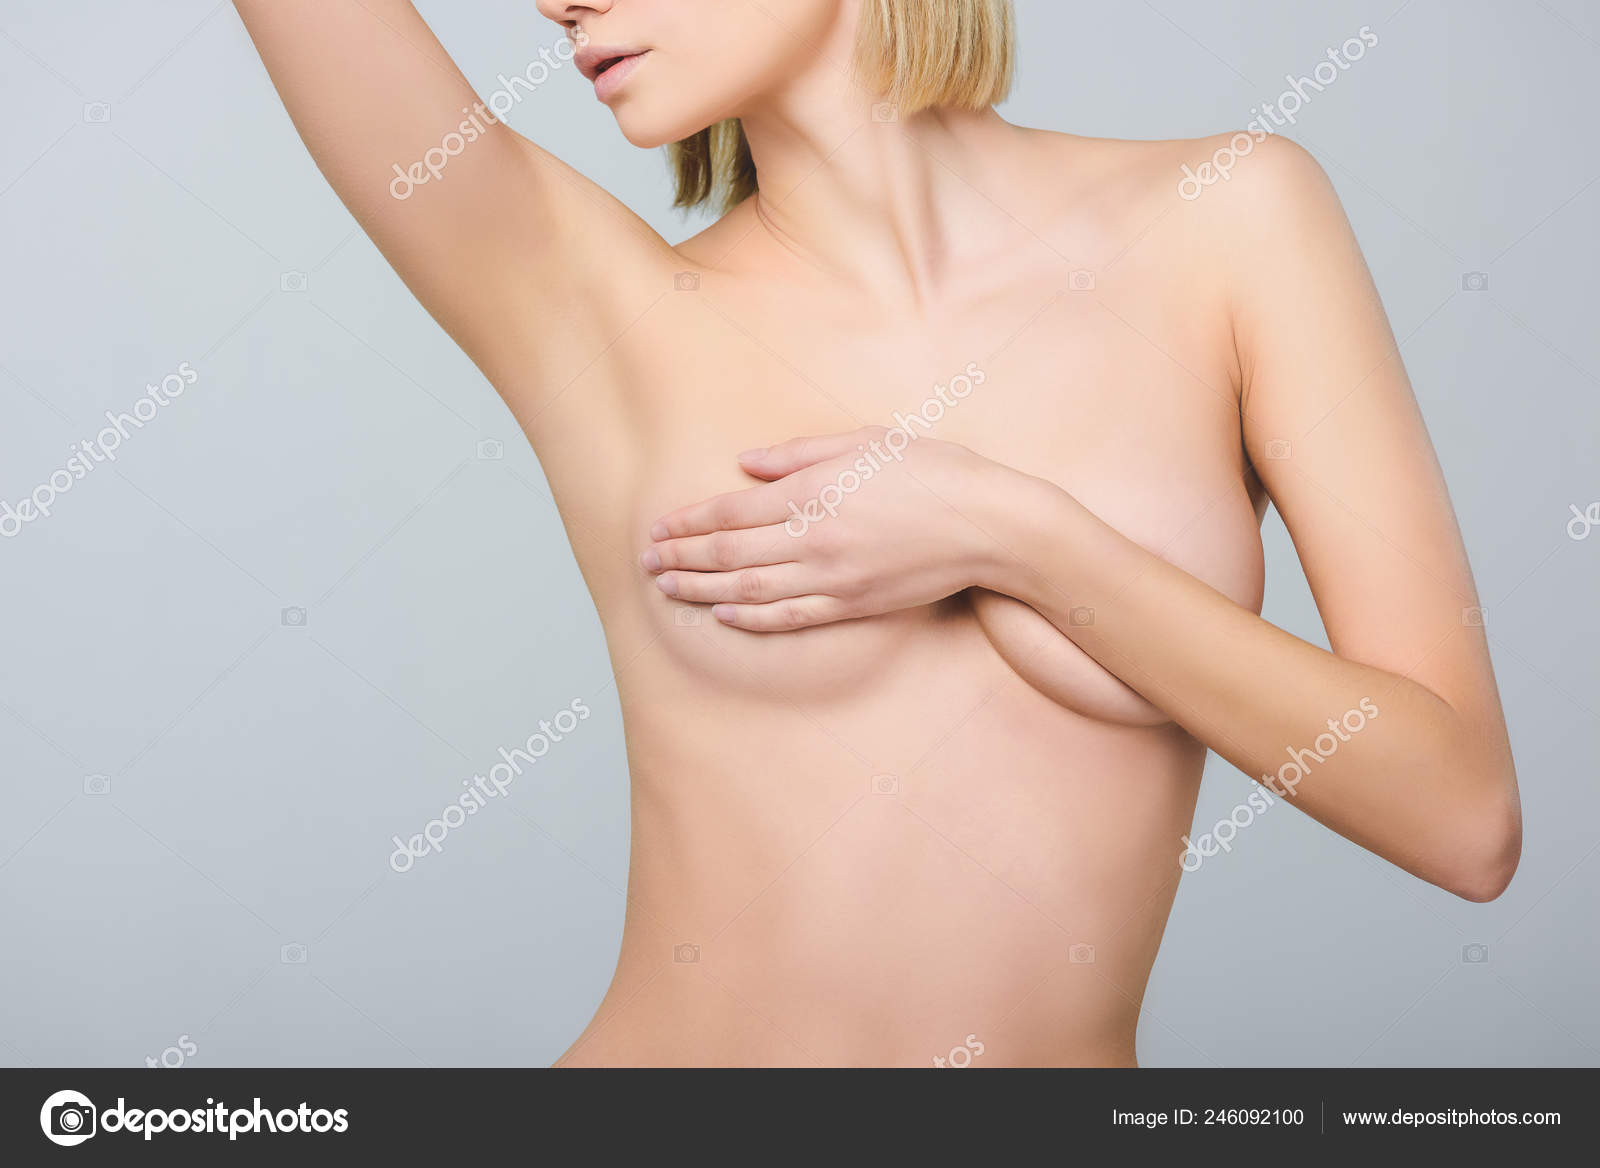 https://st4.depositphotos.com/12985790/24609/i/1600/depositphotos_246092[001-999]-stock-photo-blonde-naked-girl-covering-breast.jpg